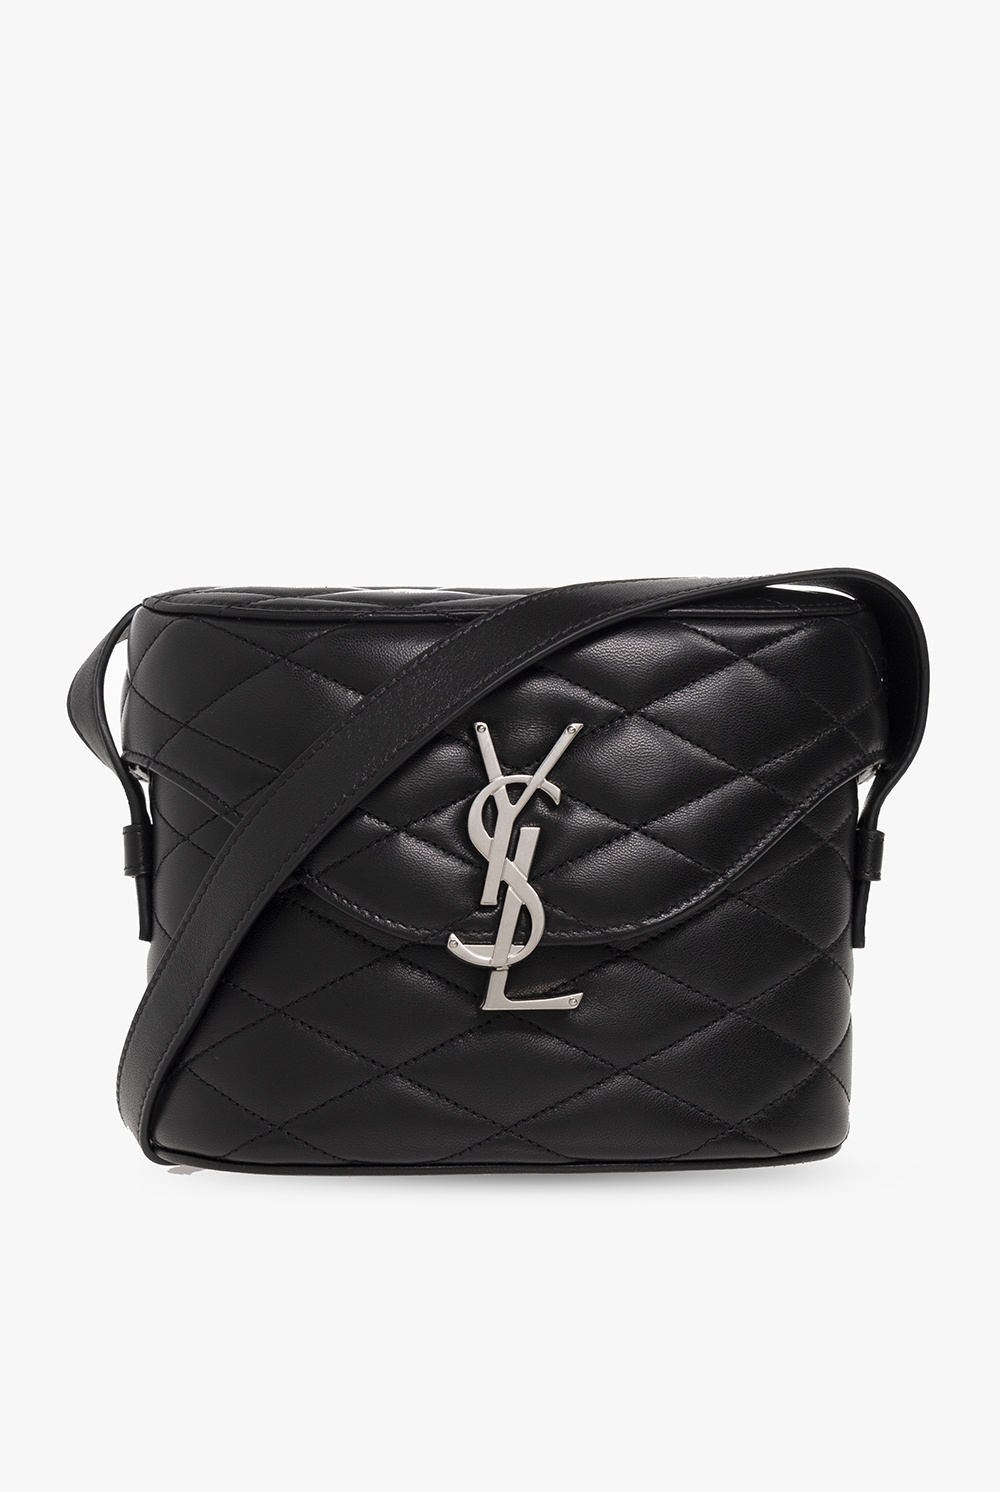 Saint Laurent ‘June Box’ shoulder bag